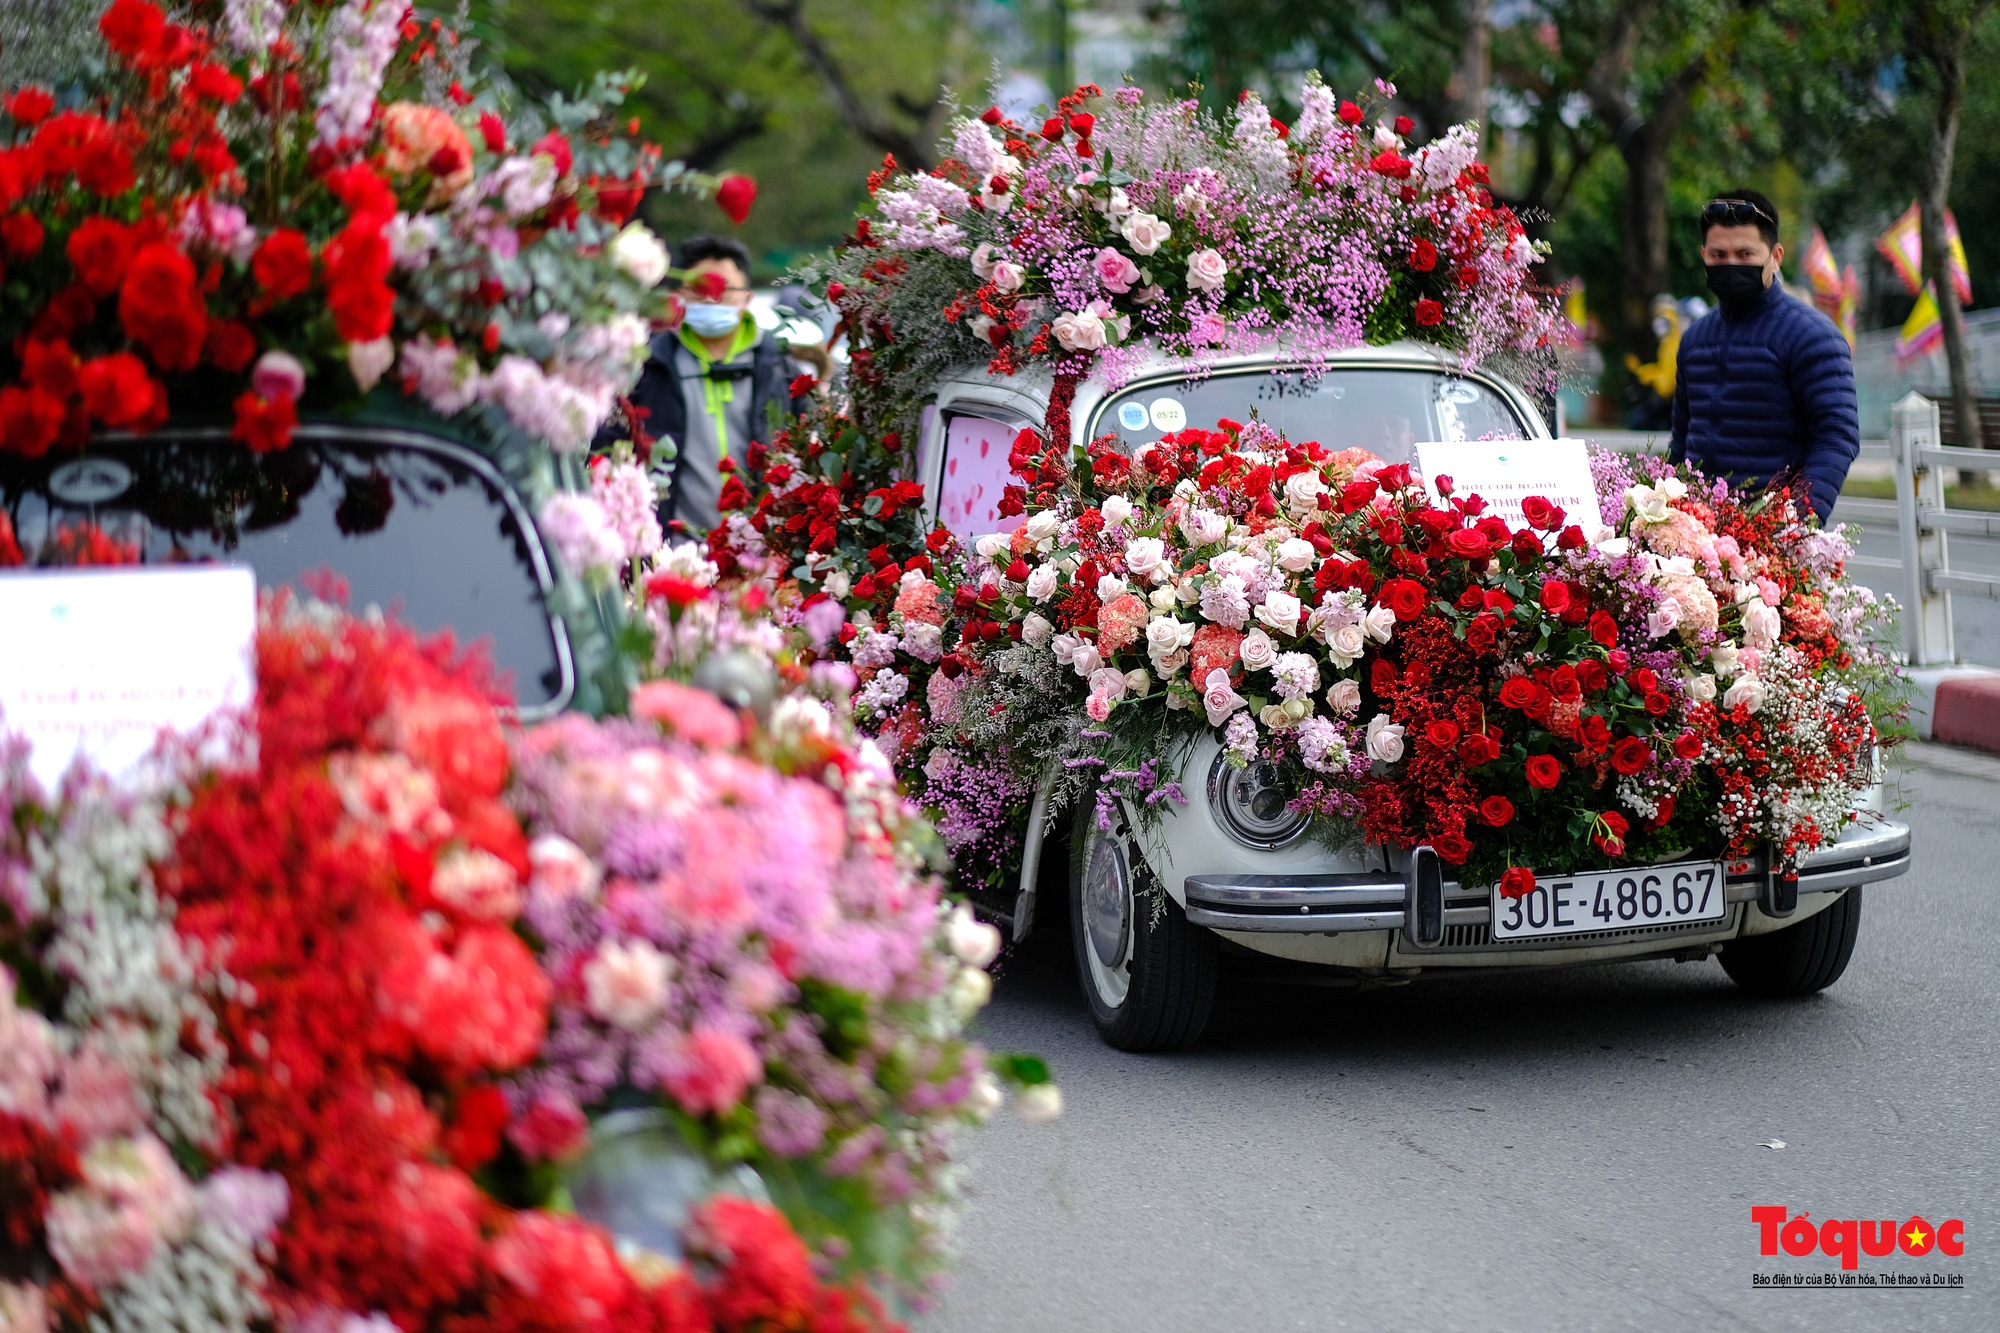 Hàng ngàn bông hoa hồng được gửi trao yêu thương trong ngày lễ tình nhân - Ảnh 3.